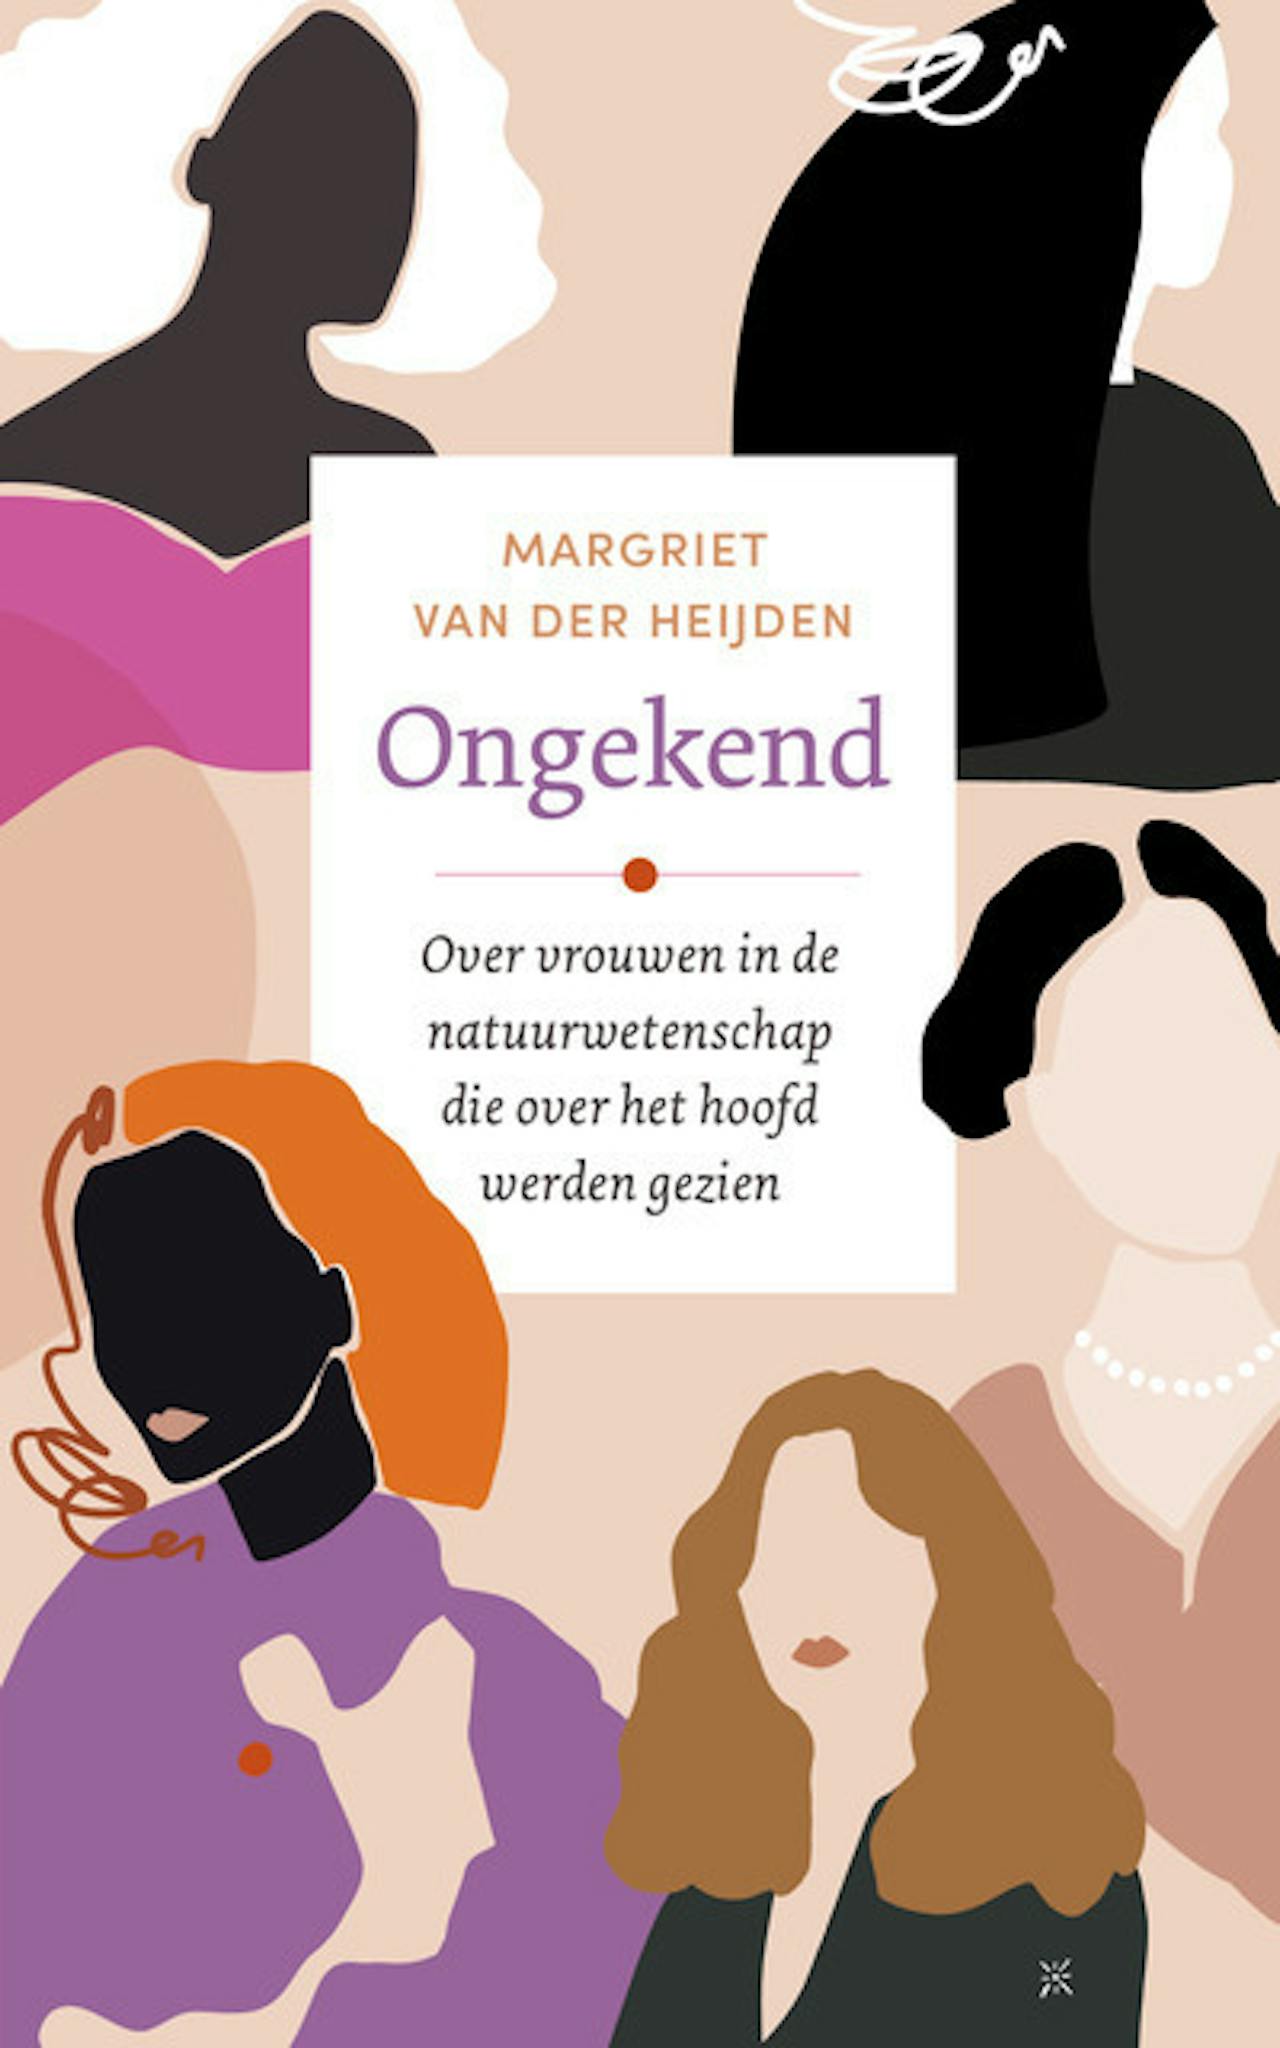 De cover van het boek 'Ongekend' van Margriet van der Heijden. Onder de titel staat de tekst: 'Over vrouwen in de natuurwetenschap die over het hoofd werden gezien'.